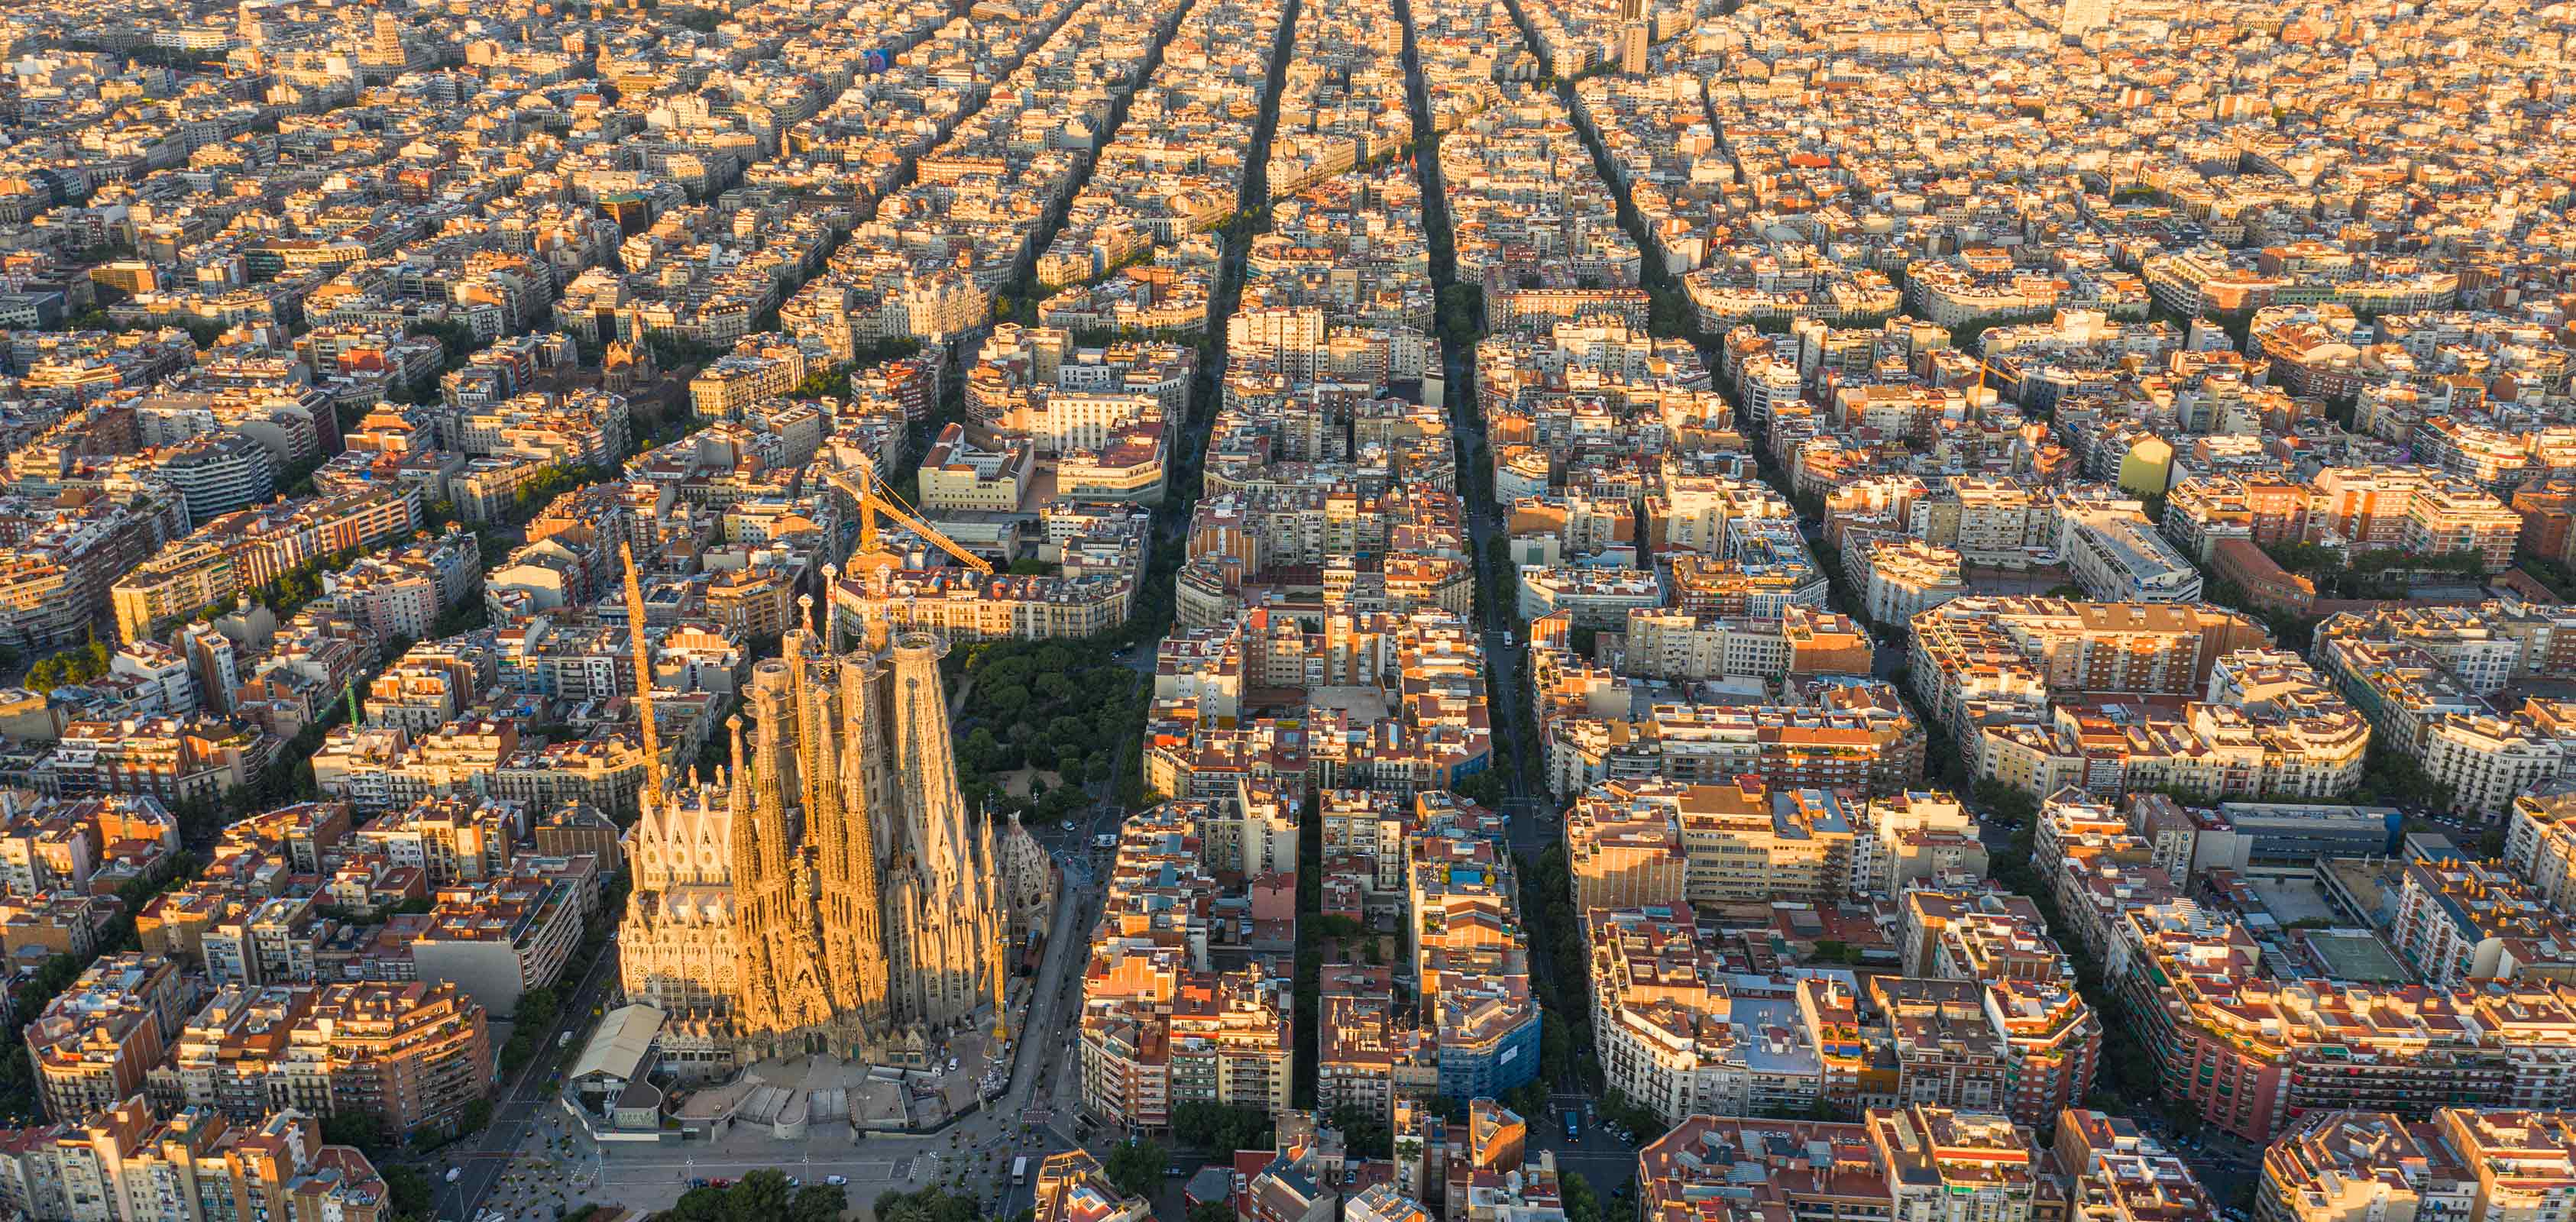 Luftaufnahme der Stadt Barcelona mit dem Stadtteil Eixample und der Kathedrale Sagrada Familia im Zentrum - SEAT kreatives Lebensgefühl | SEAT